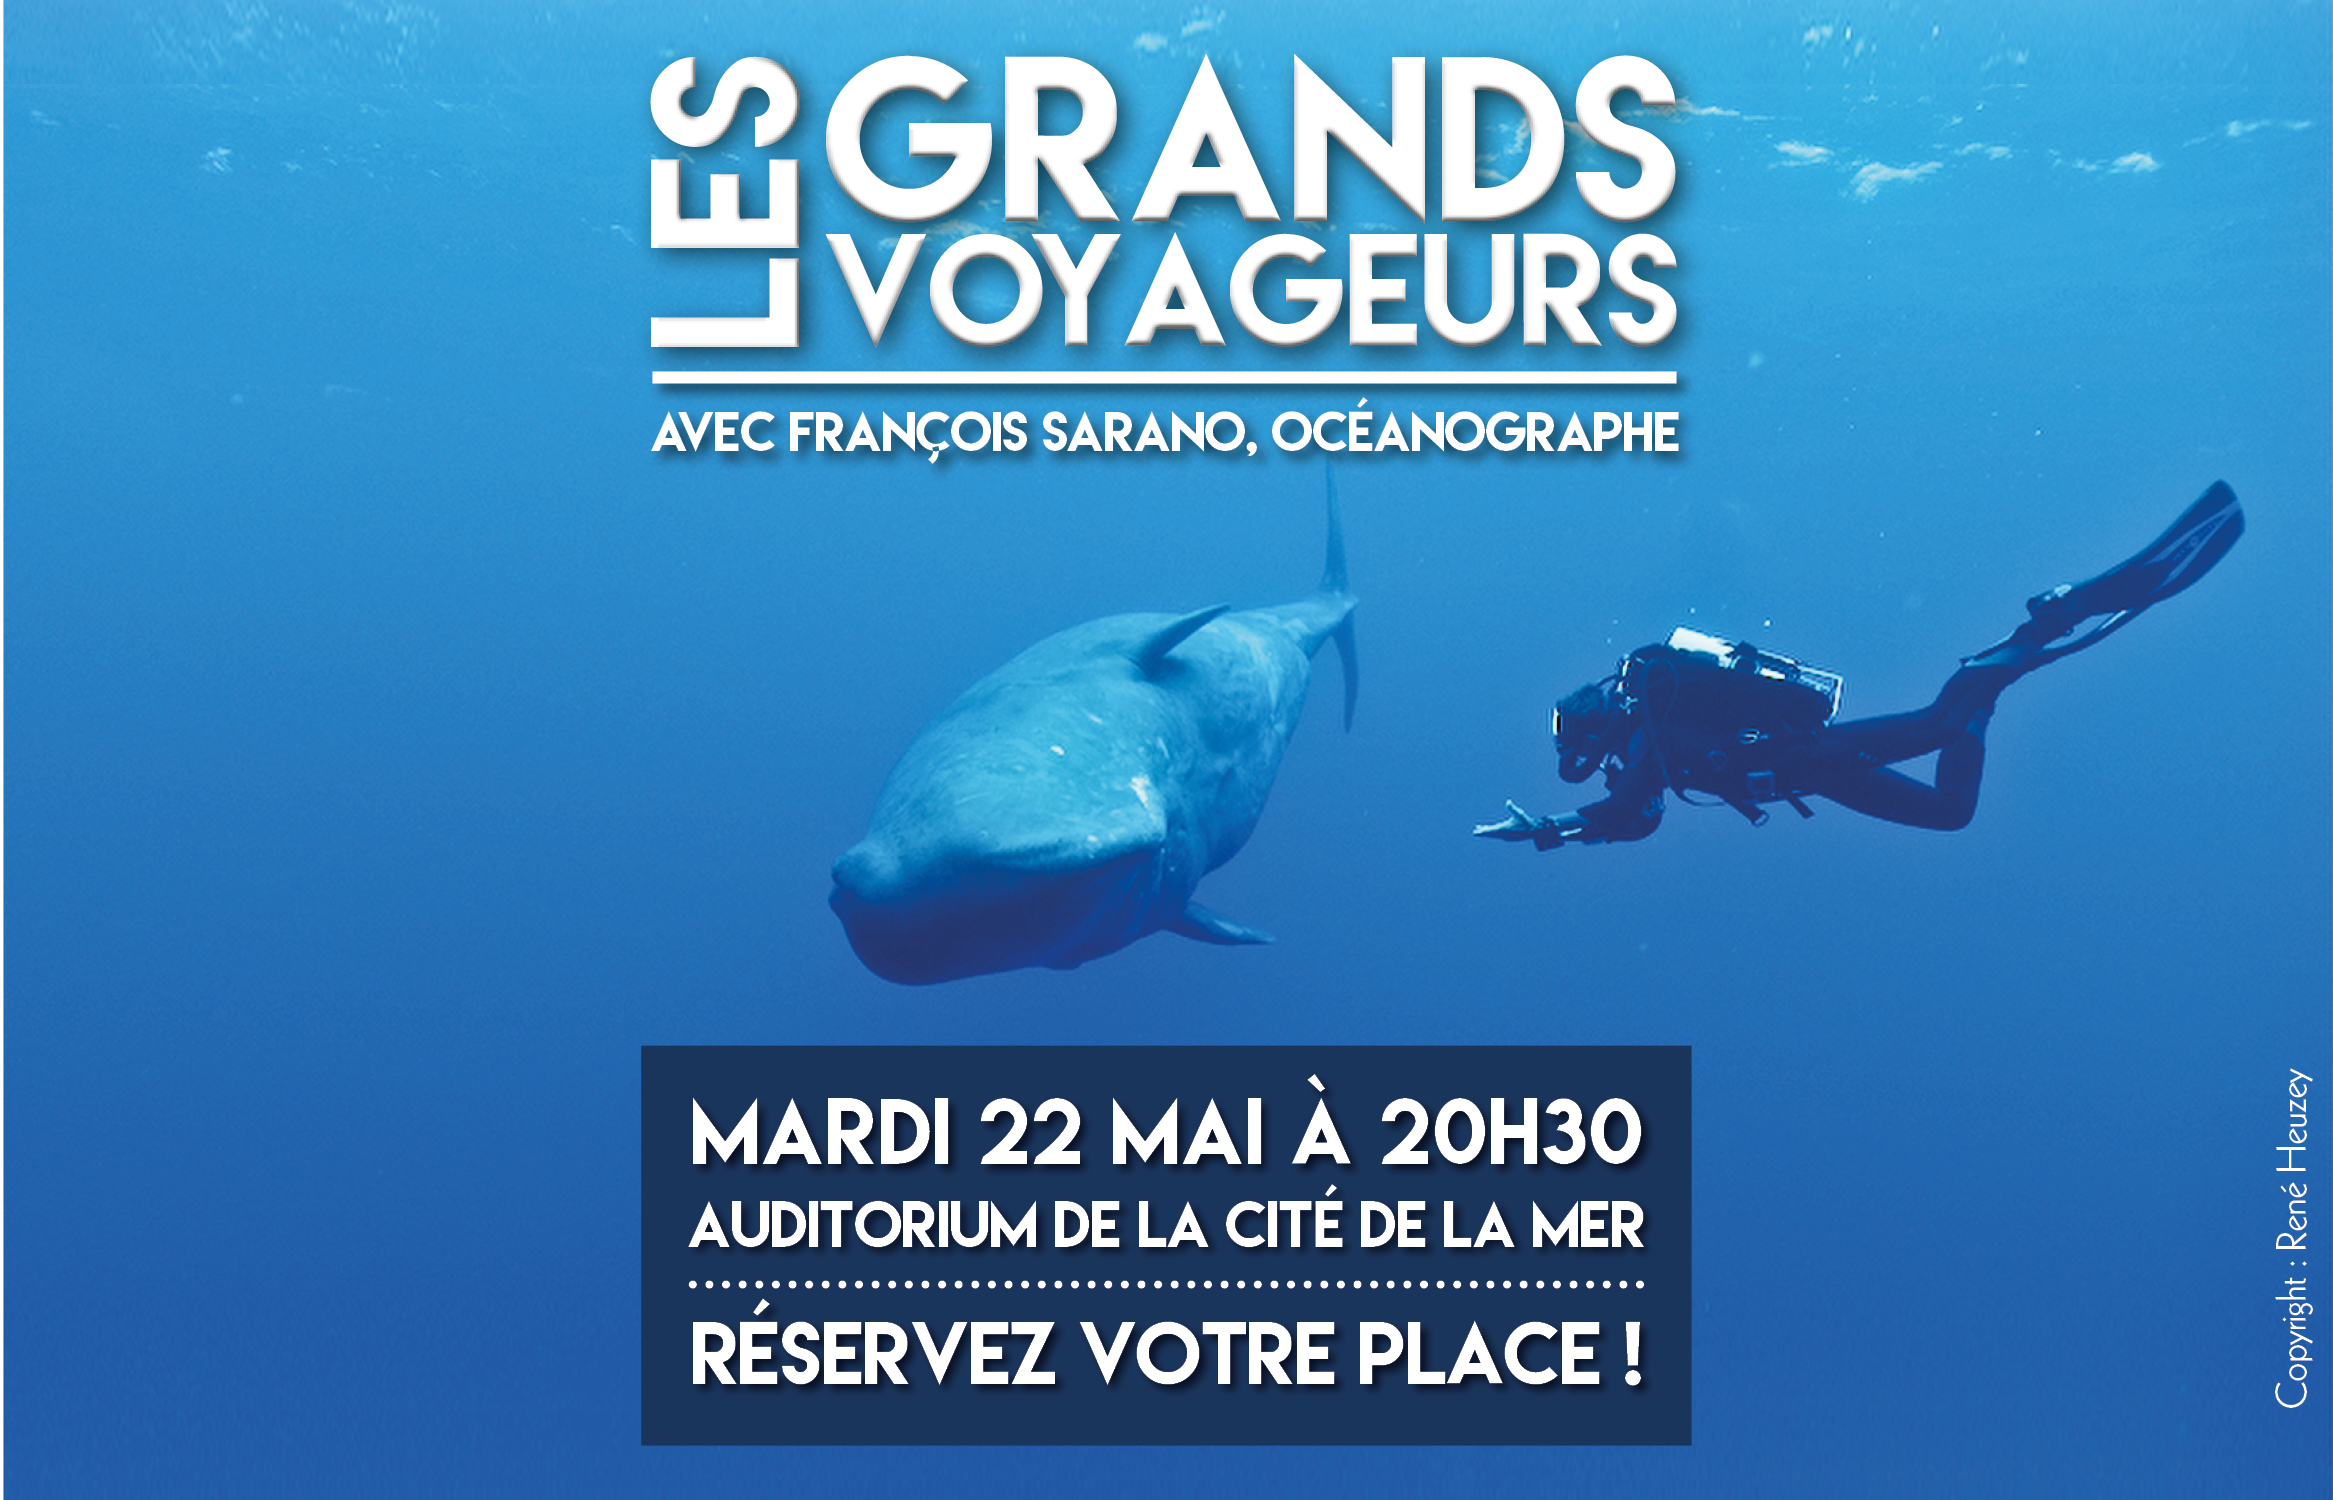 Cherbourg : L’ancien plongeur de Cousteau à la Cité de la mer mardi 22 mai 2018